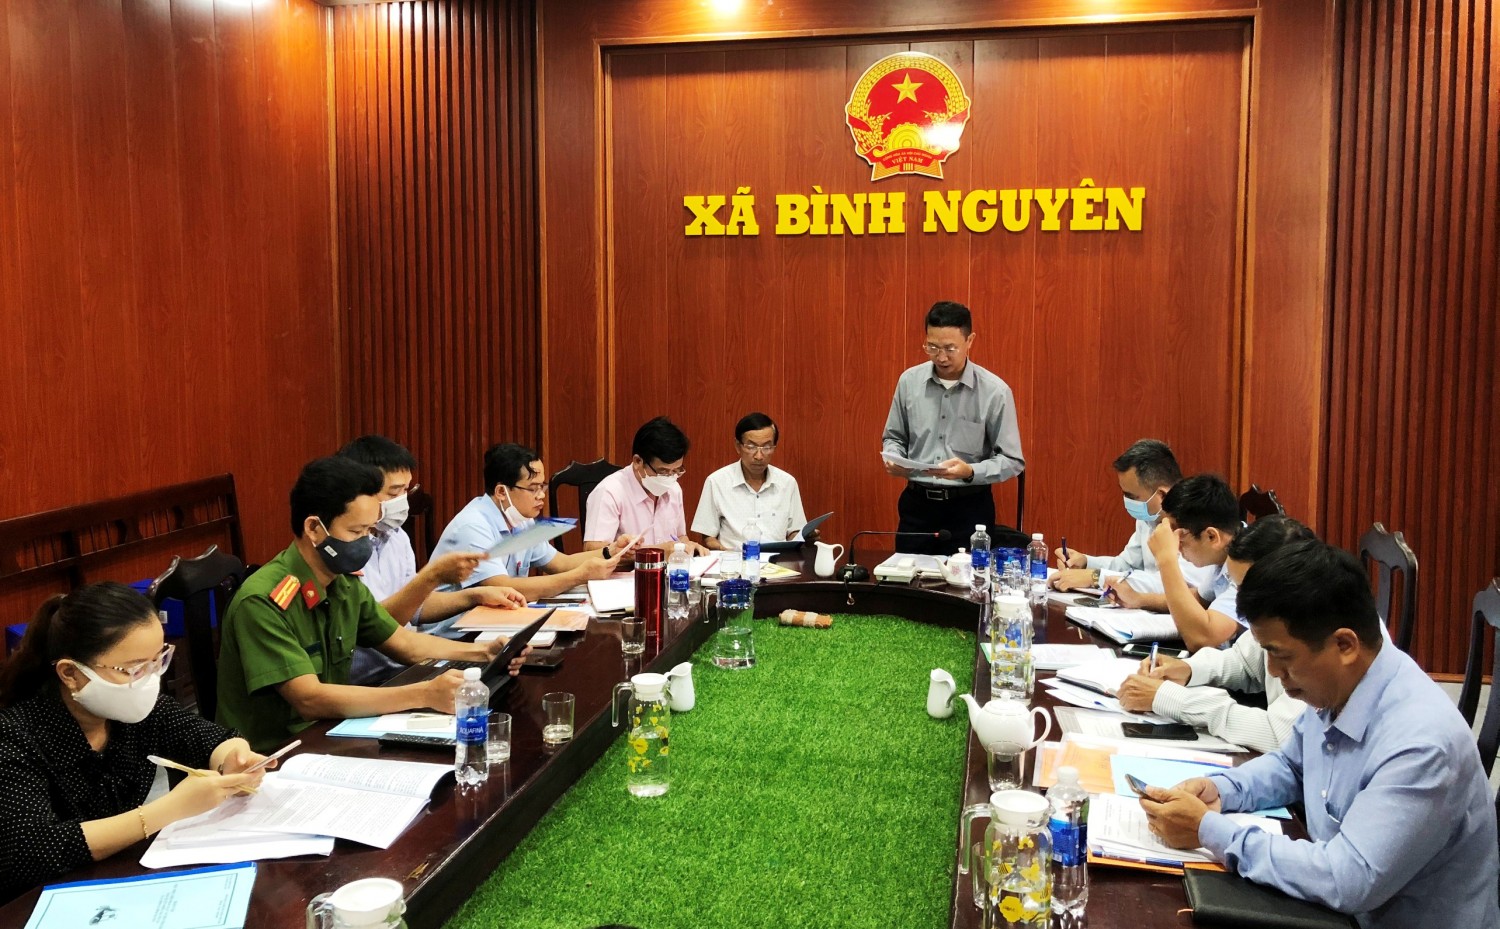 Ủy ban MTTQ Việt Nam huyện triển khai giám sát tại UBND xã Bình Nguyên về việc thực hiện pháp luật về tiếp công dân, giải quyết khiếu nại, tố cáo